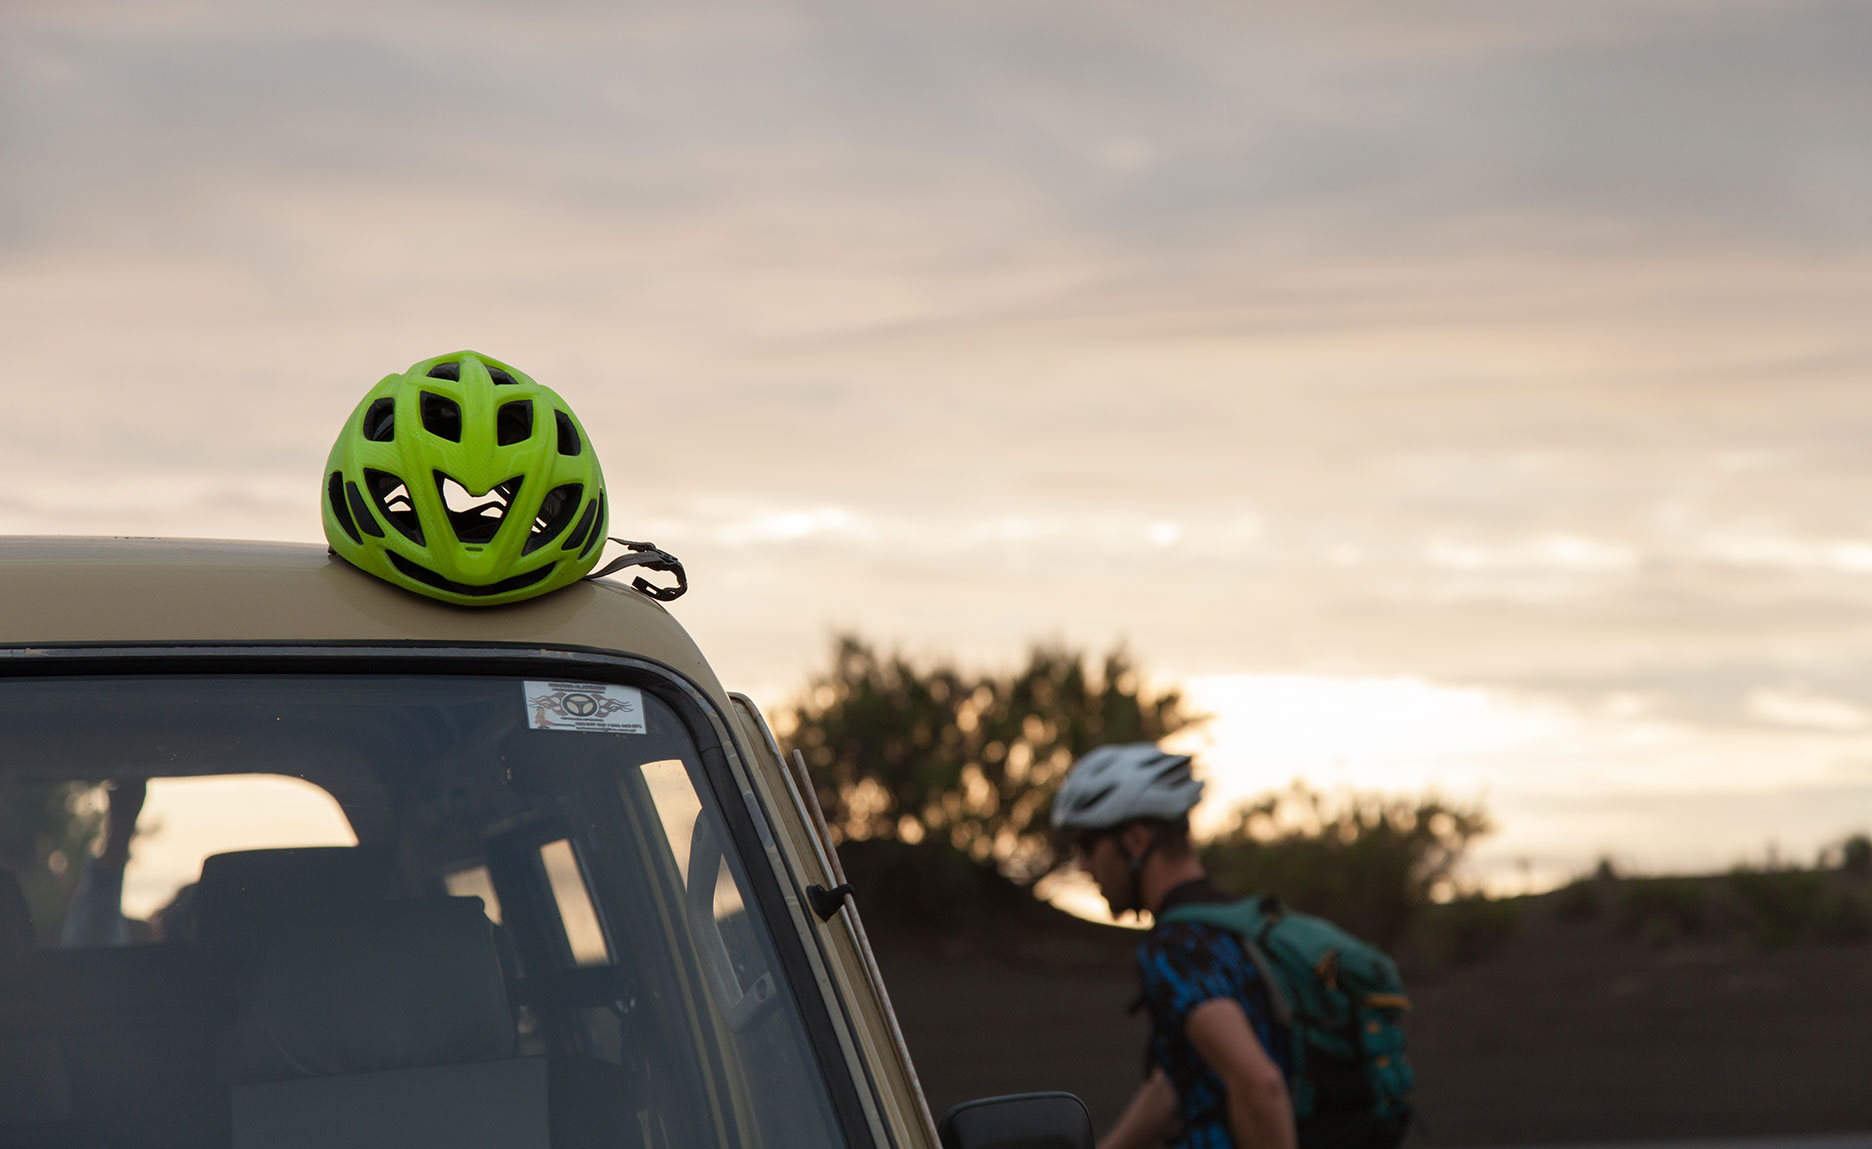 green bicycle helmet